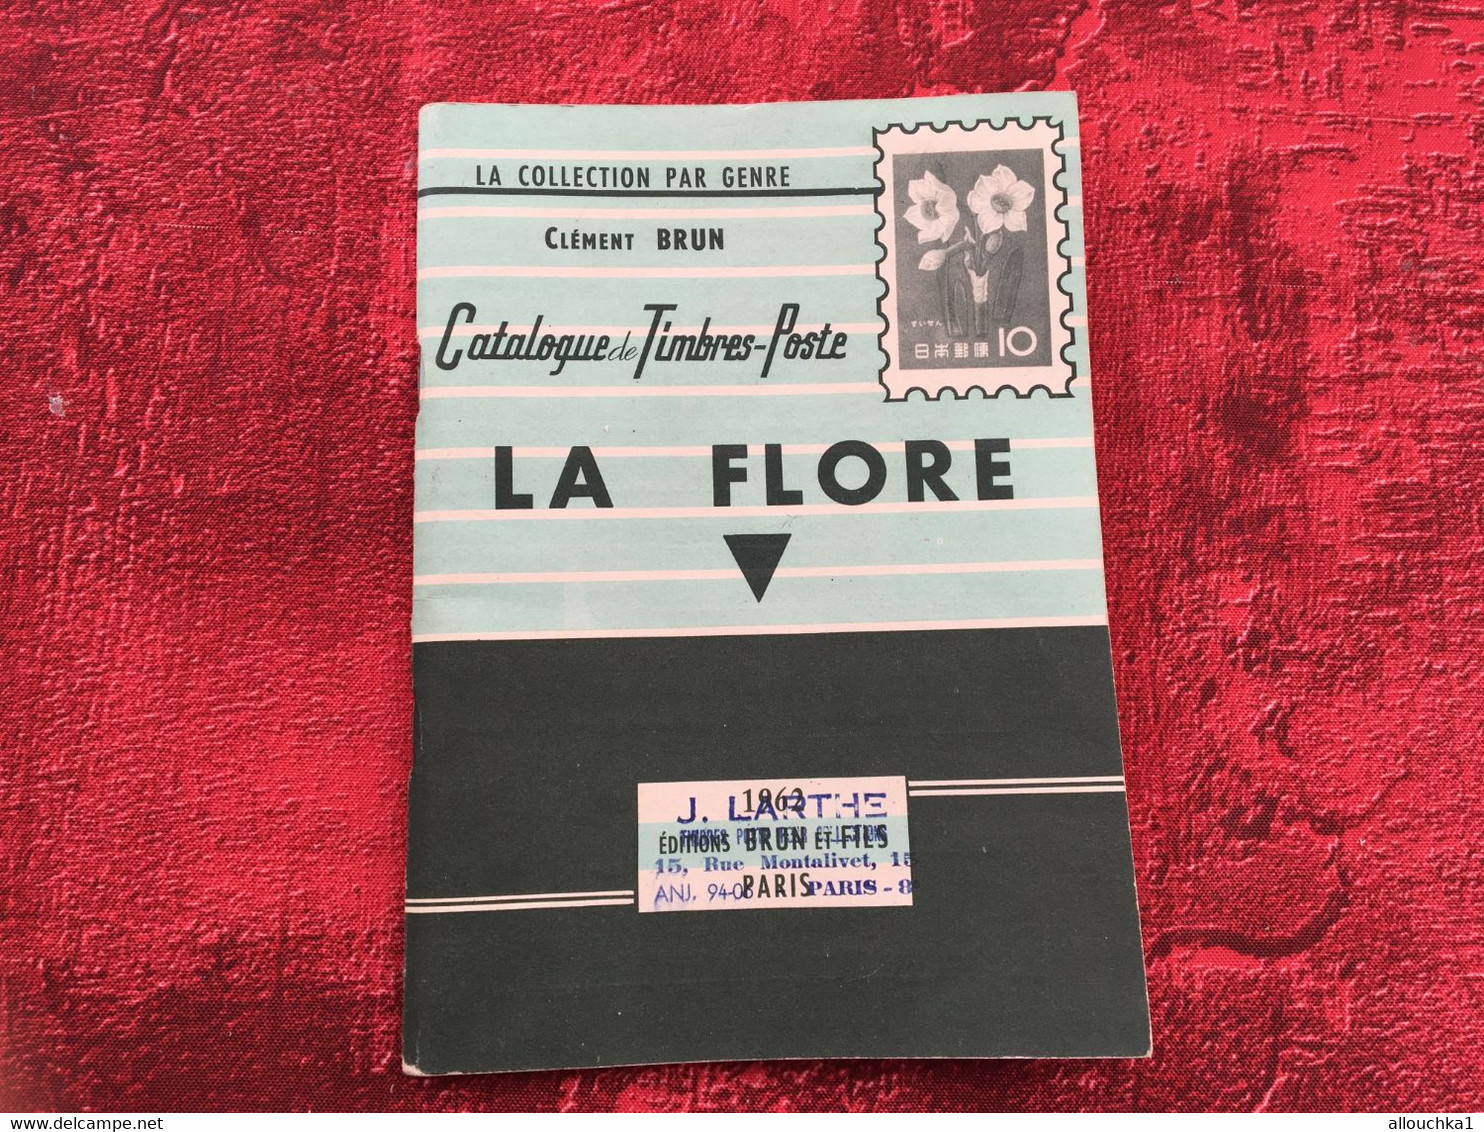 THÈME LA FLORE 1962 ✔Collection par Genre Catalogue de Cotation C. Brun-☛Timbres-Poste Matériel Thématique fleurs flower